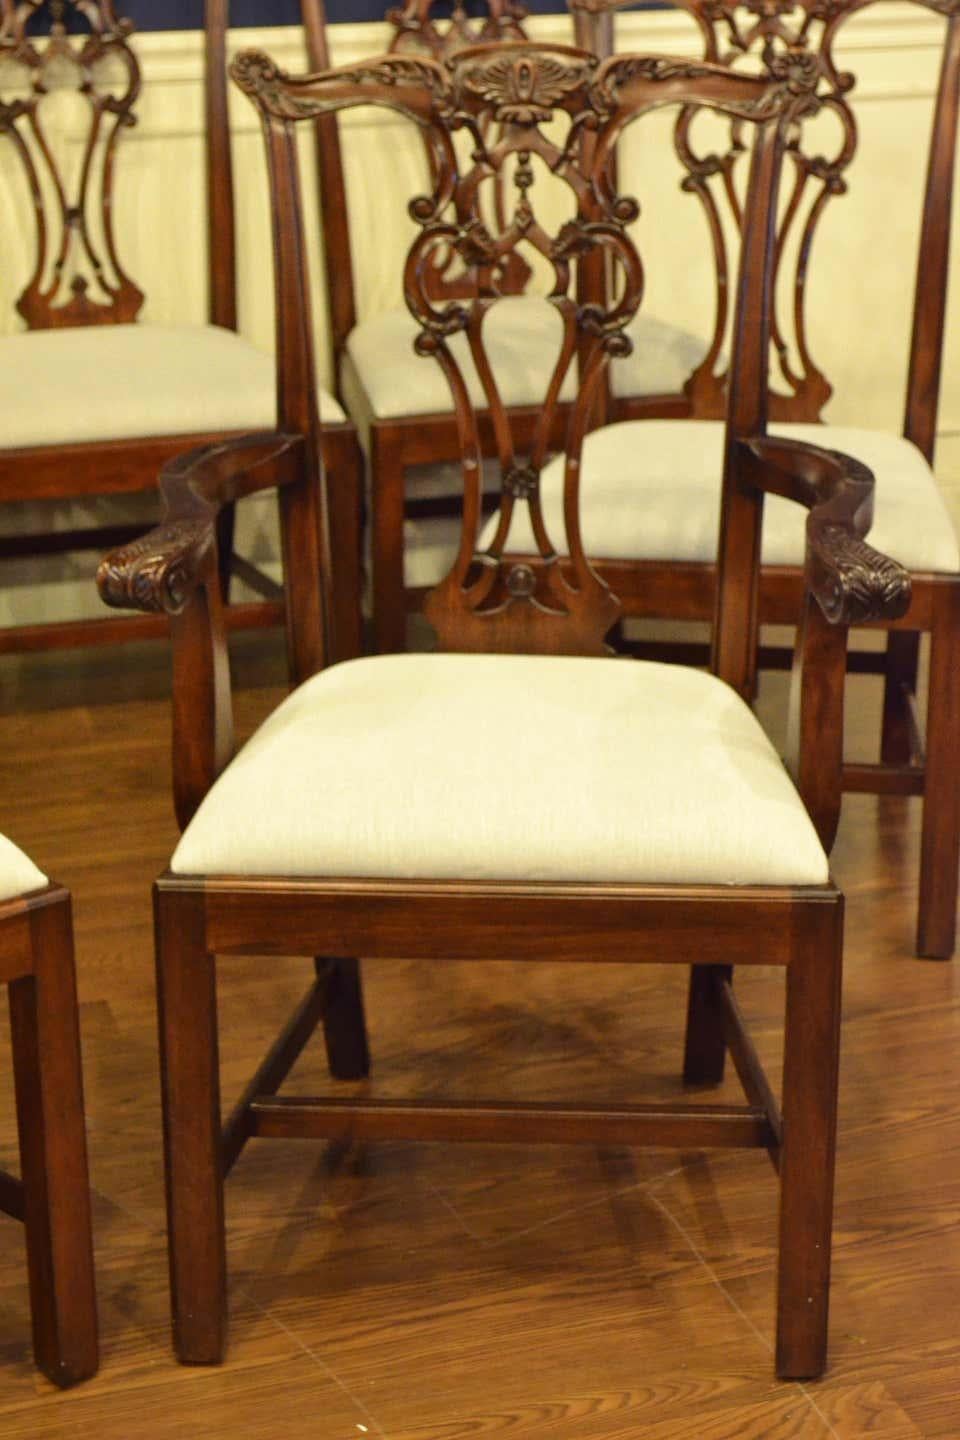 Dies sind neue traditionelle Mahagoni-Esszimmerstühle. Ihr Design wurde von den englischen Esszimmerstühlen mit geraden Beinen im Chippendale-Stil aus der georgianischen Zeit inspiriert. Sie zeichnen sich durch den klassischen Chippendale-Stil mit